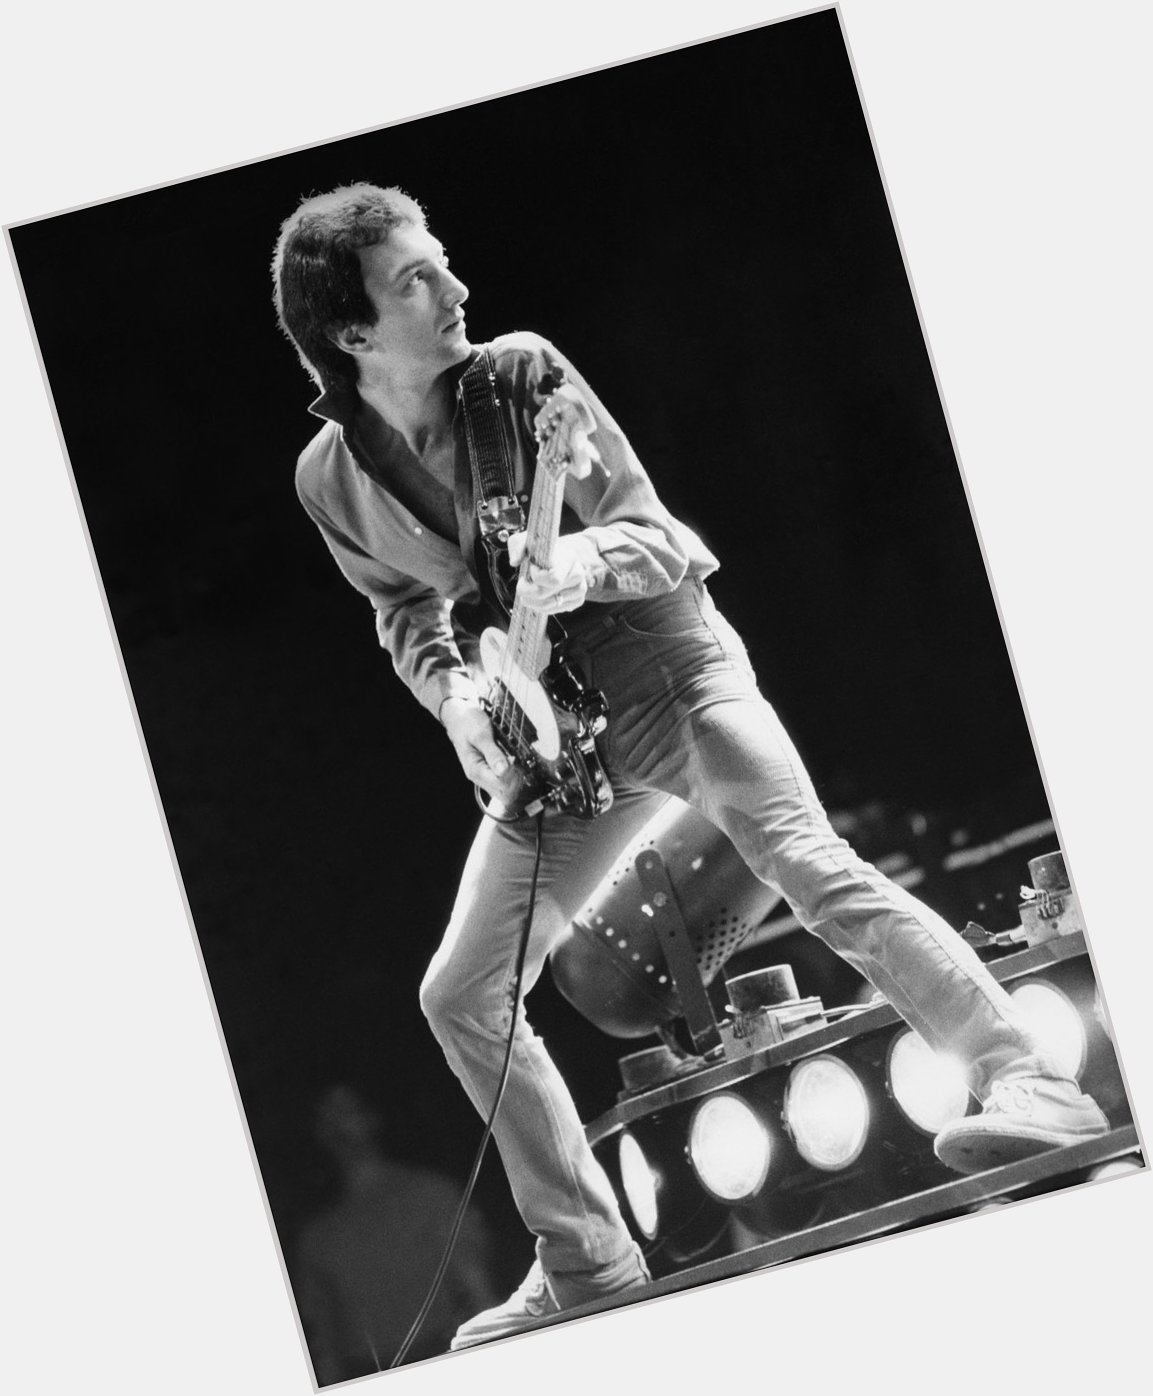 A very happy birthday to John Deacon. 67 today! 